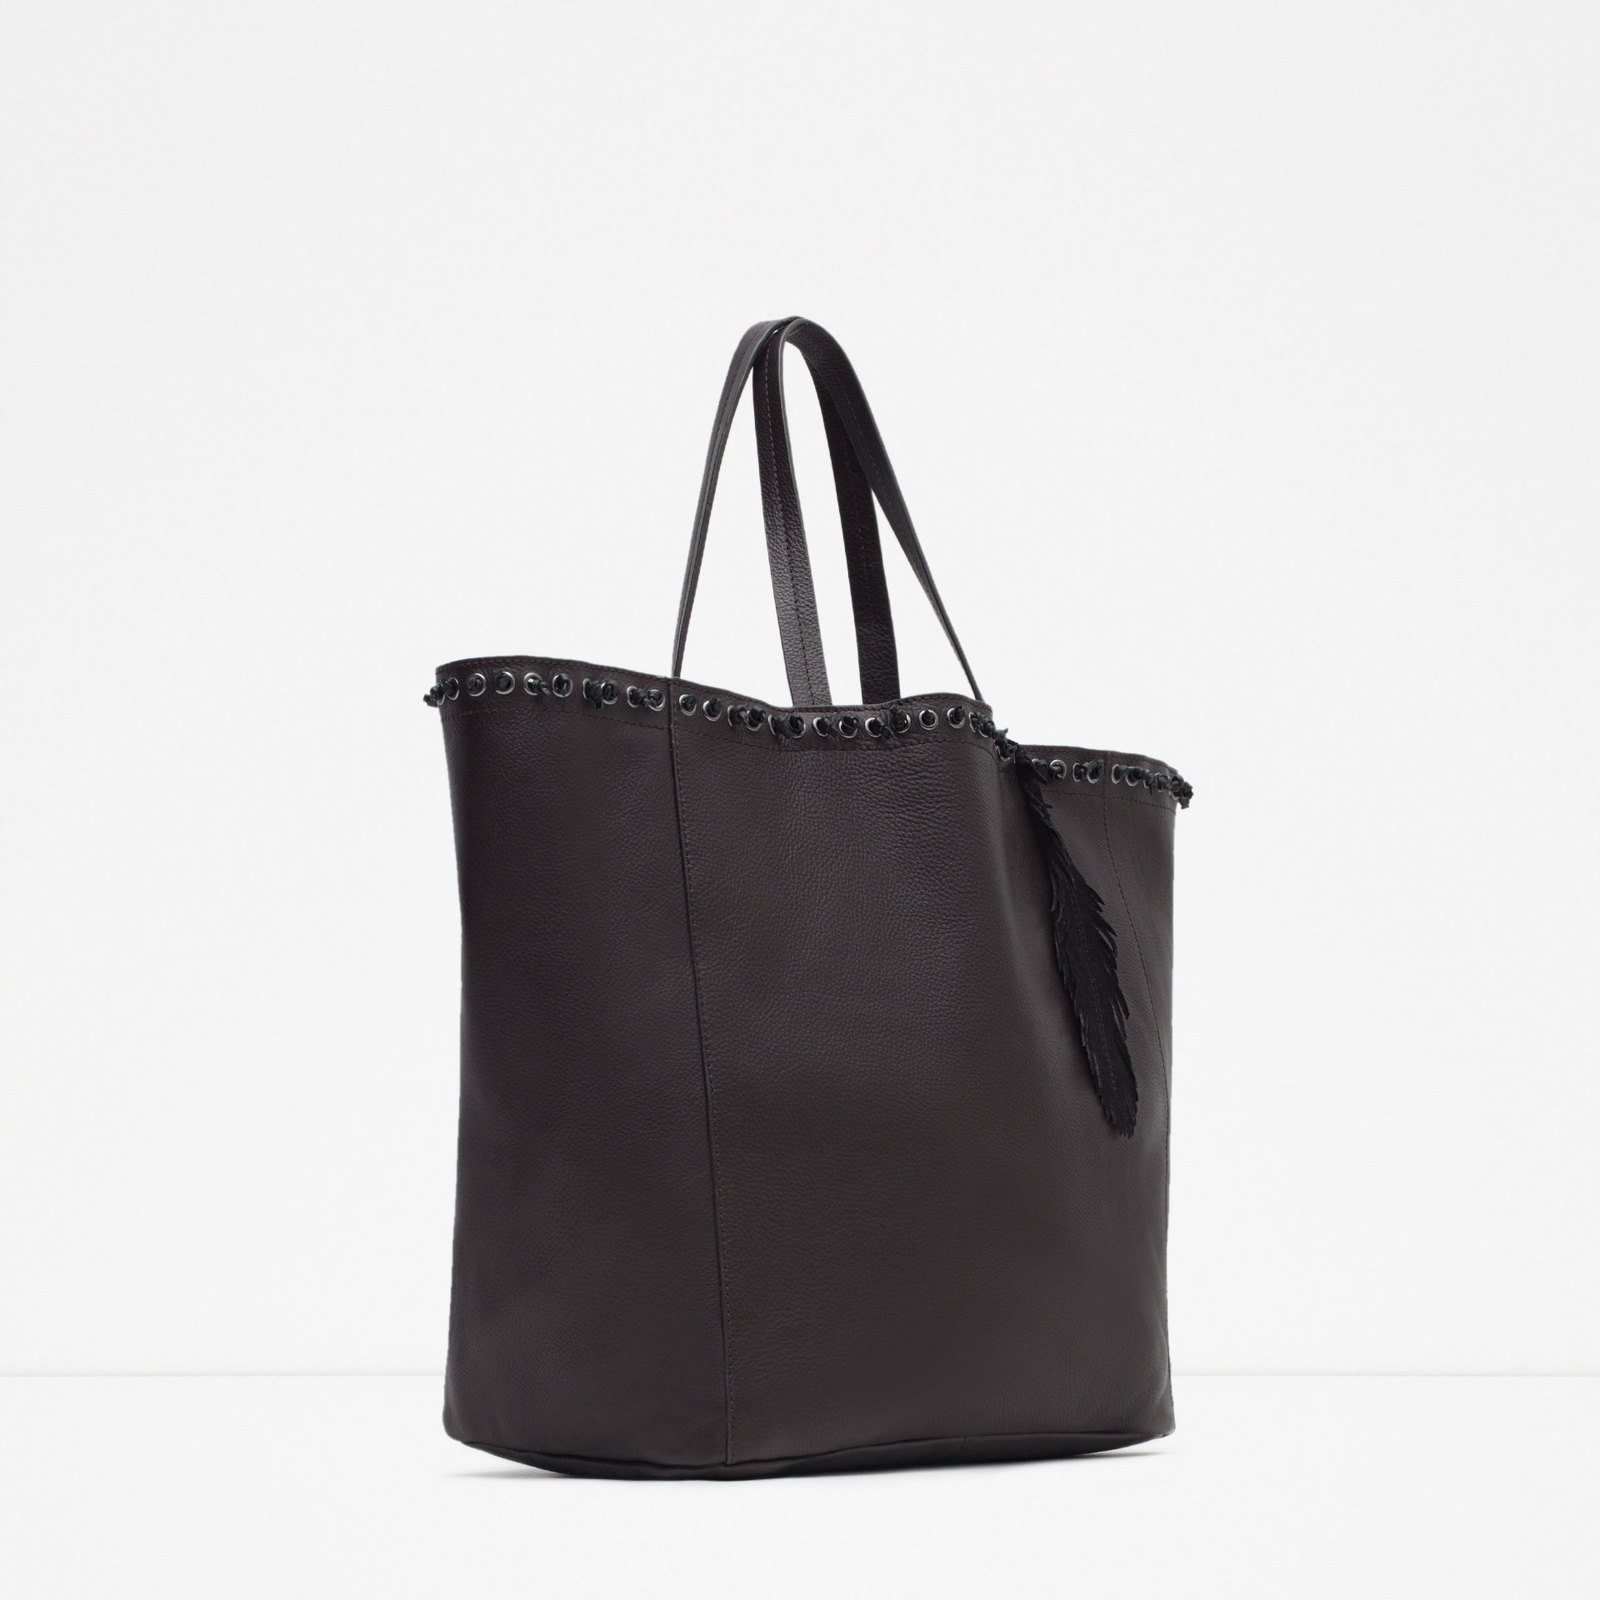 Zara csábos női fekete bevásárló táska 2015 fotója